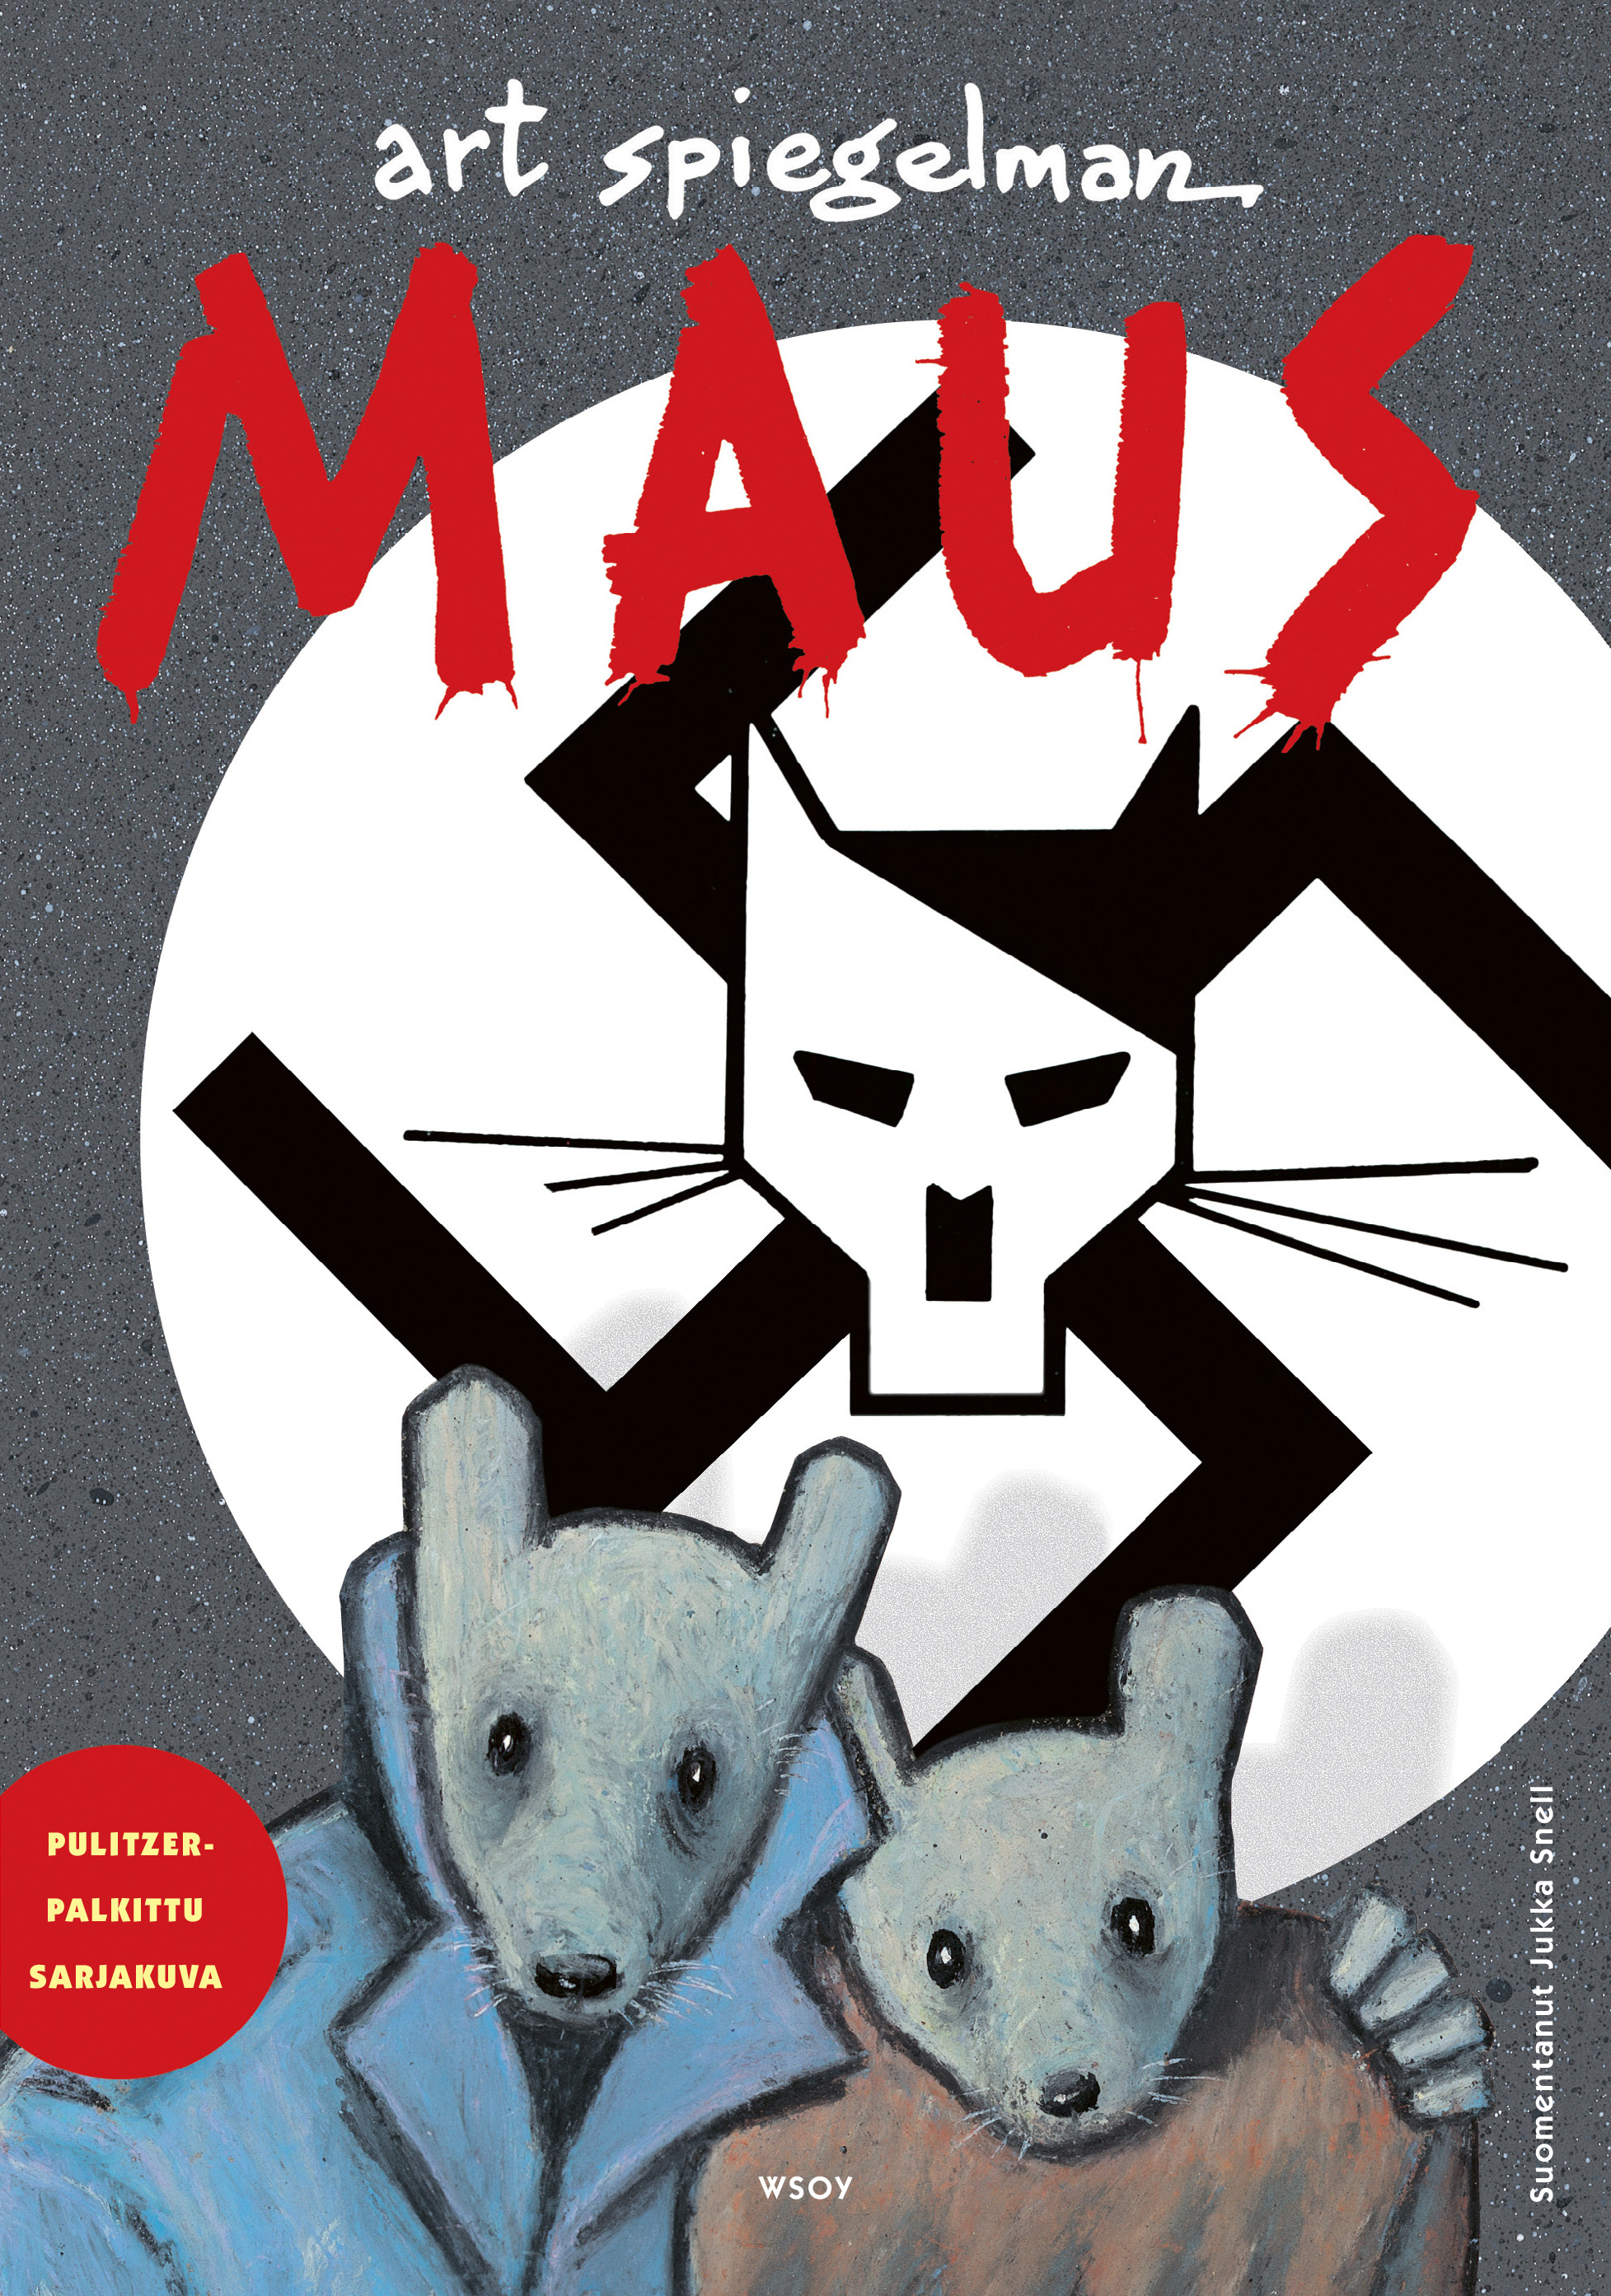 Art Spiegelmanin klassikkosarjakuvan Maus kansikuva